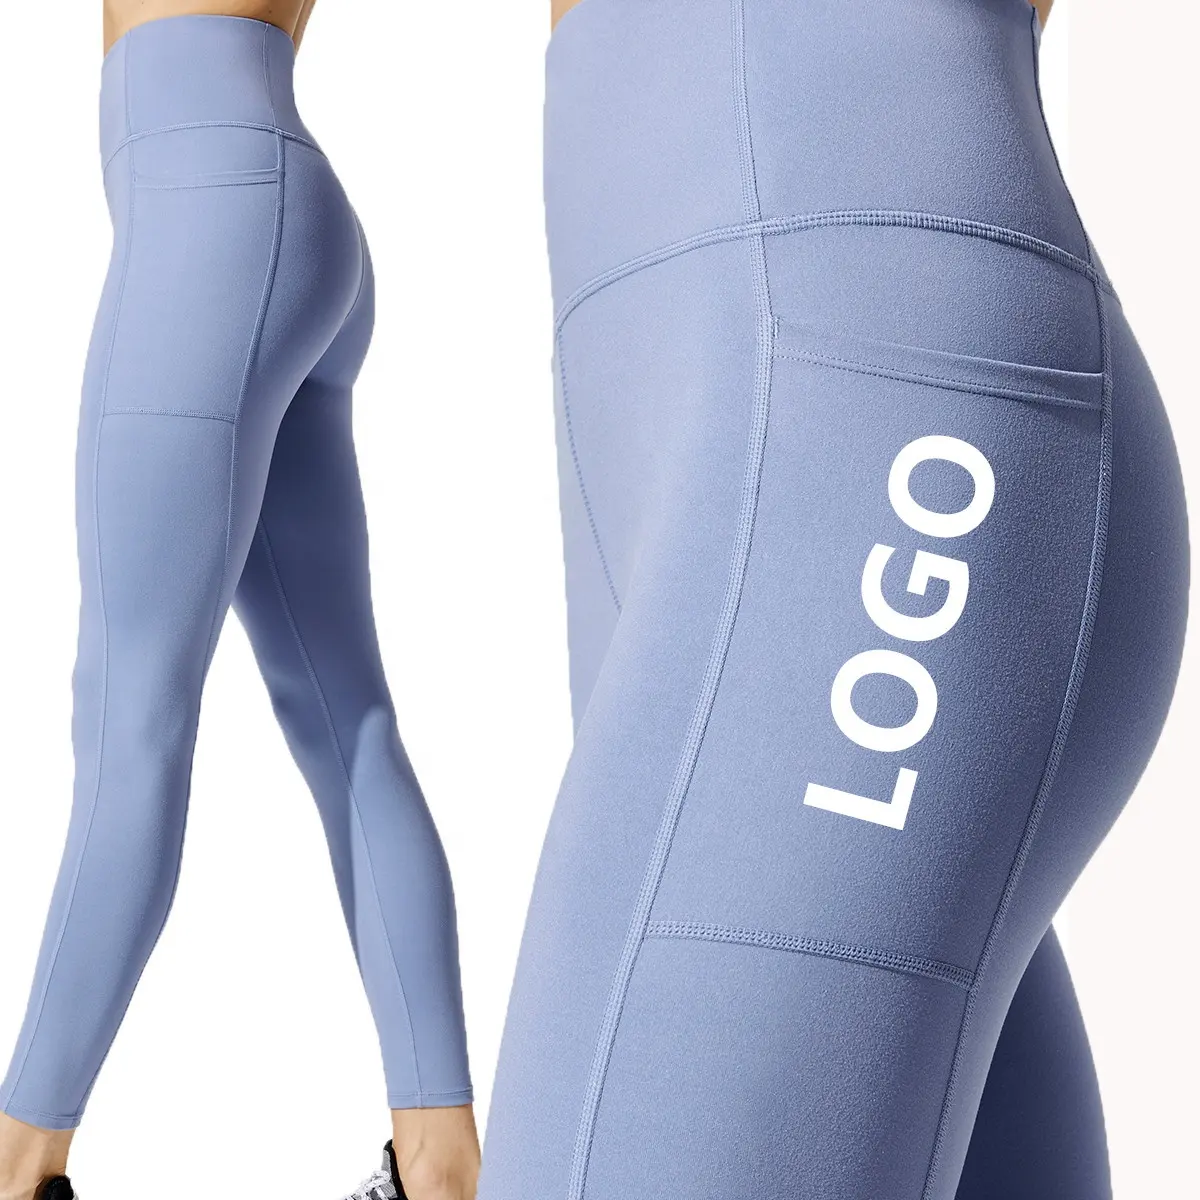 Schnelle trockene Kompression Fitness Yoga tragen hoch taillierte Hosen Workout Butt Lifting Leggings mit Tasche